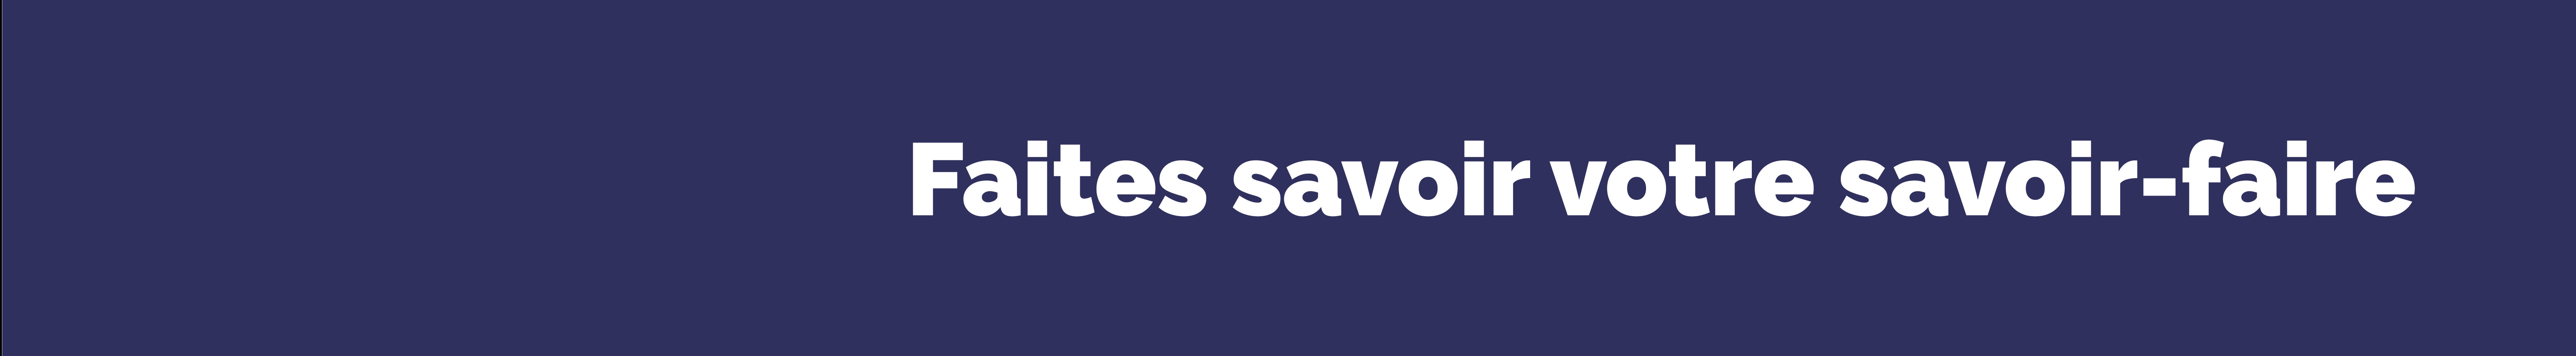 Agence L'artisane's profile banner